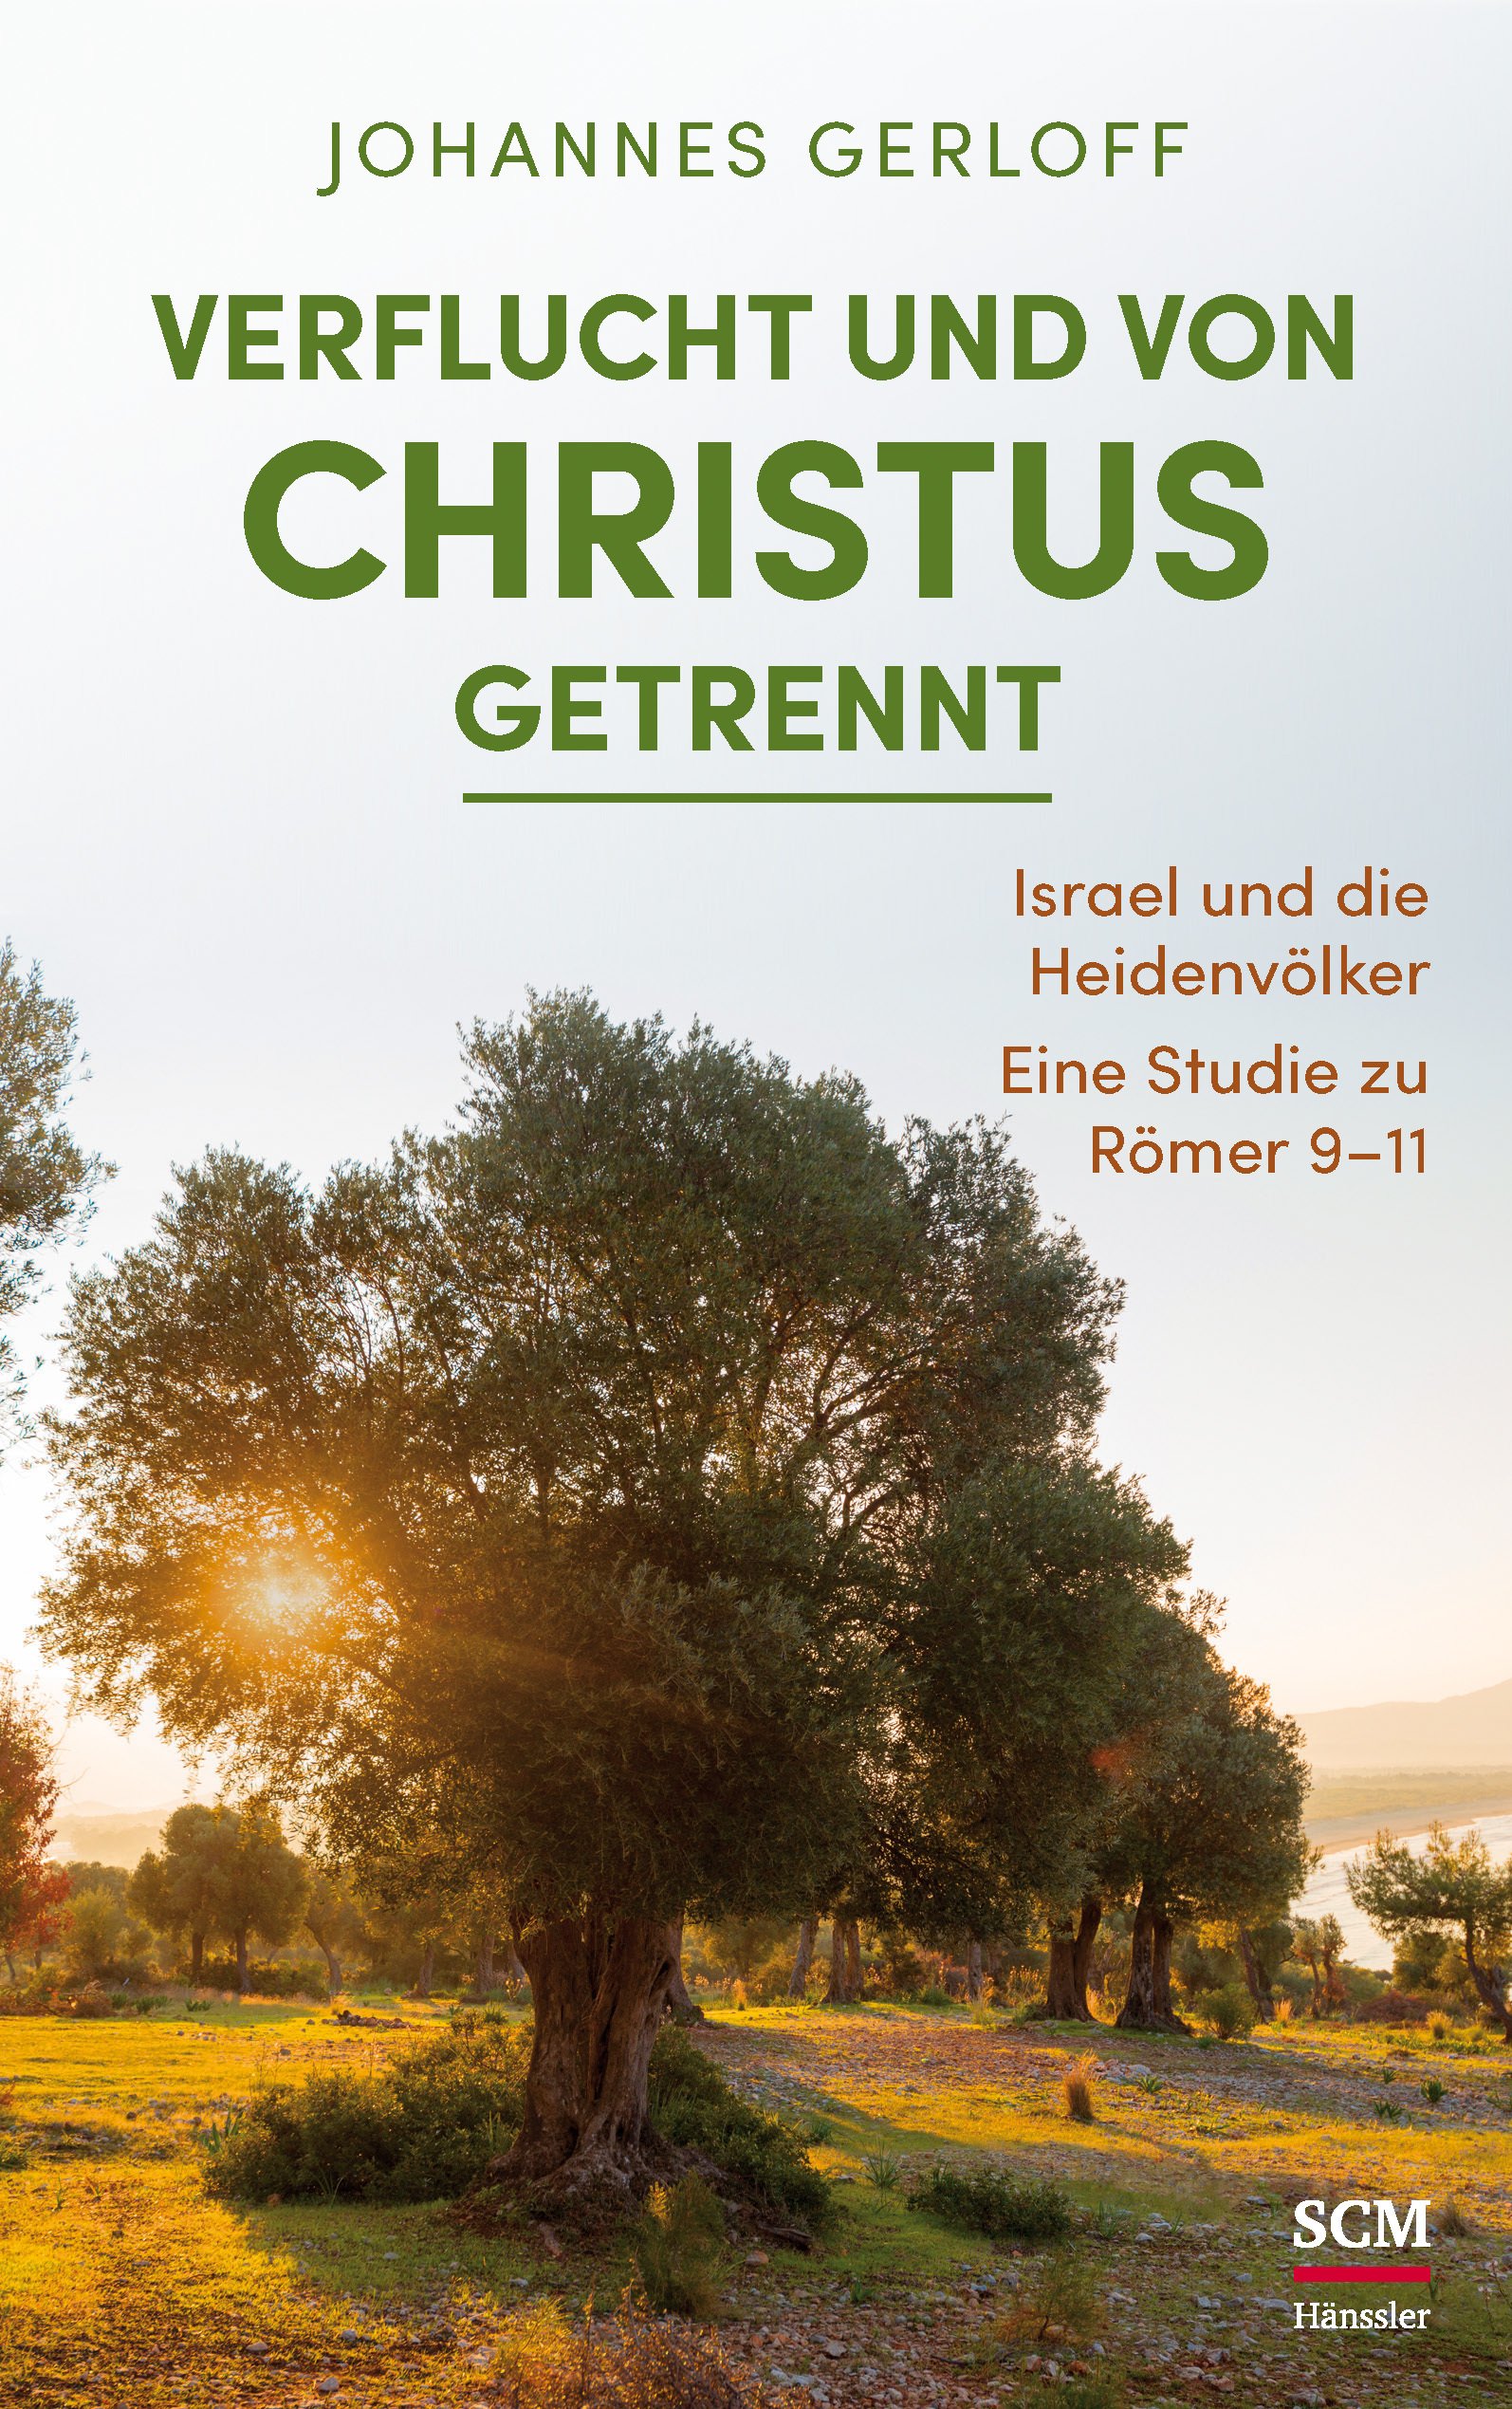 Verflucht und von Christus getrennt
Isarael und die Heidenvölker - Eine Studie zu Römer 9-11